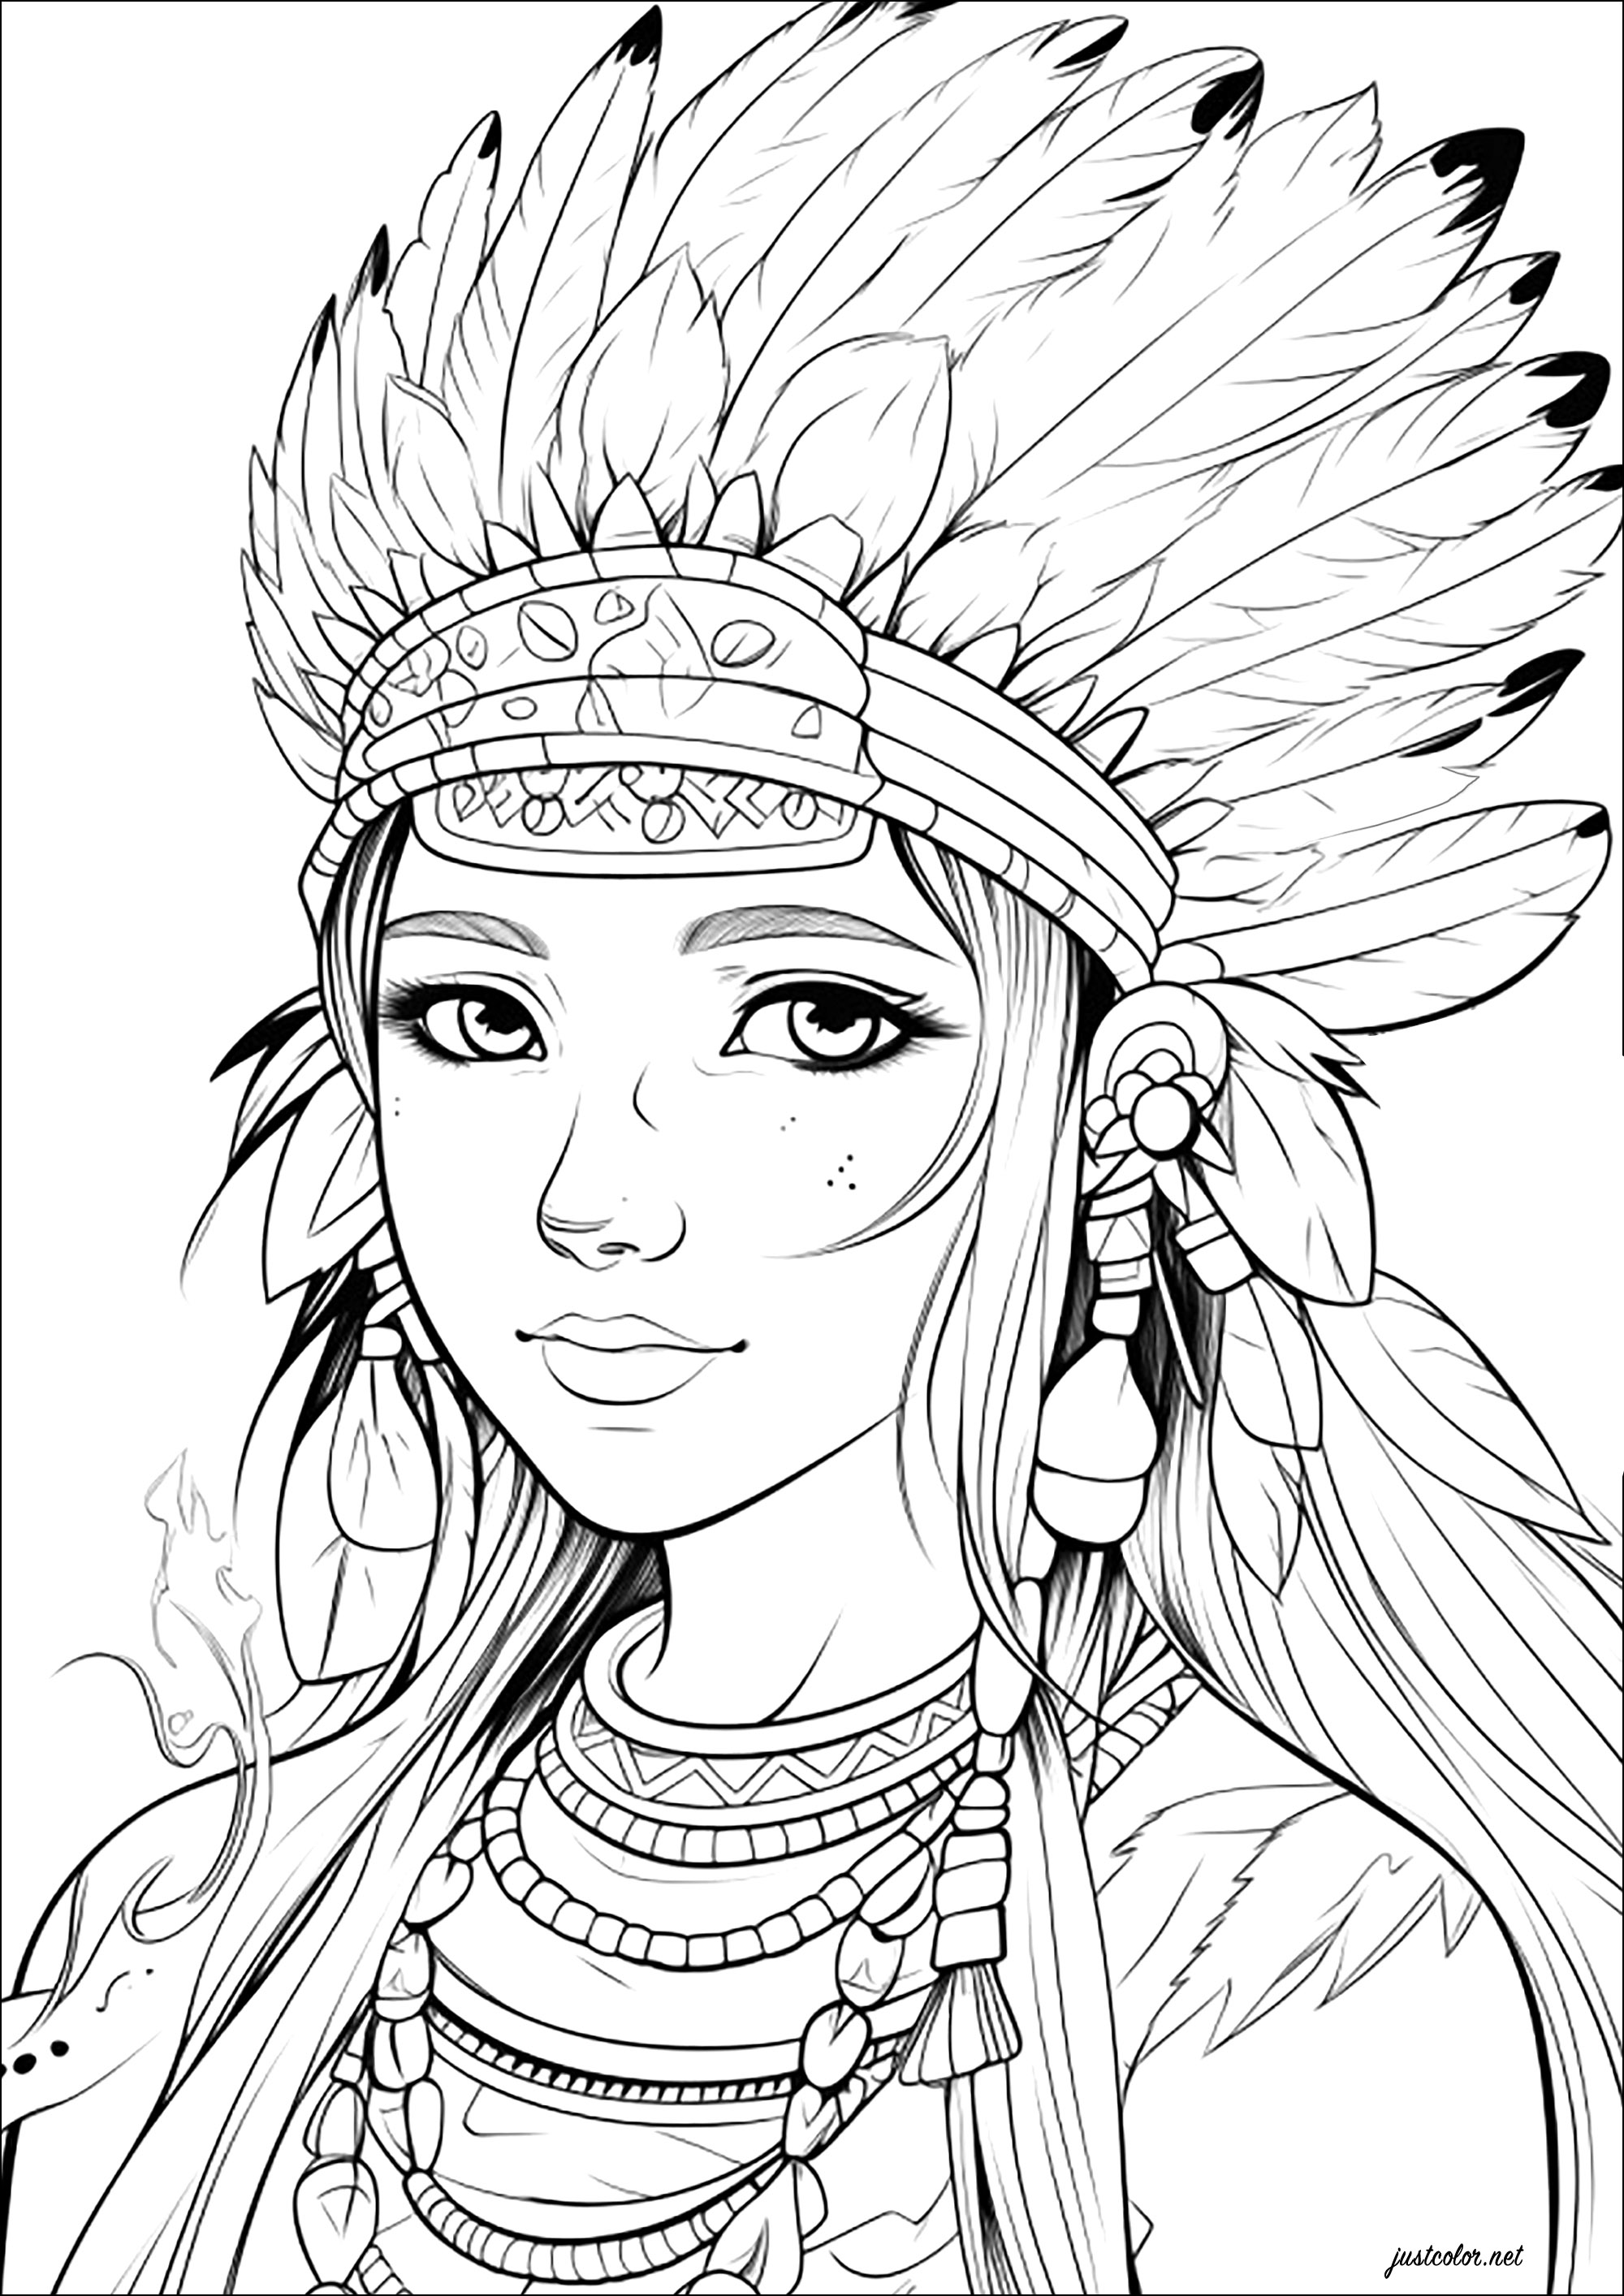 Junge Frau mit indianischem Kopfschmuck. Stell dir vor, diese Figur ist die Tochter des Häuptlings eines amerikanischen Indianerstammes, und schon hast du einen tollen Malspaß!